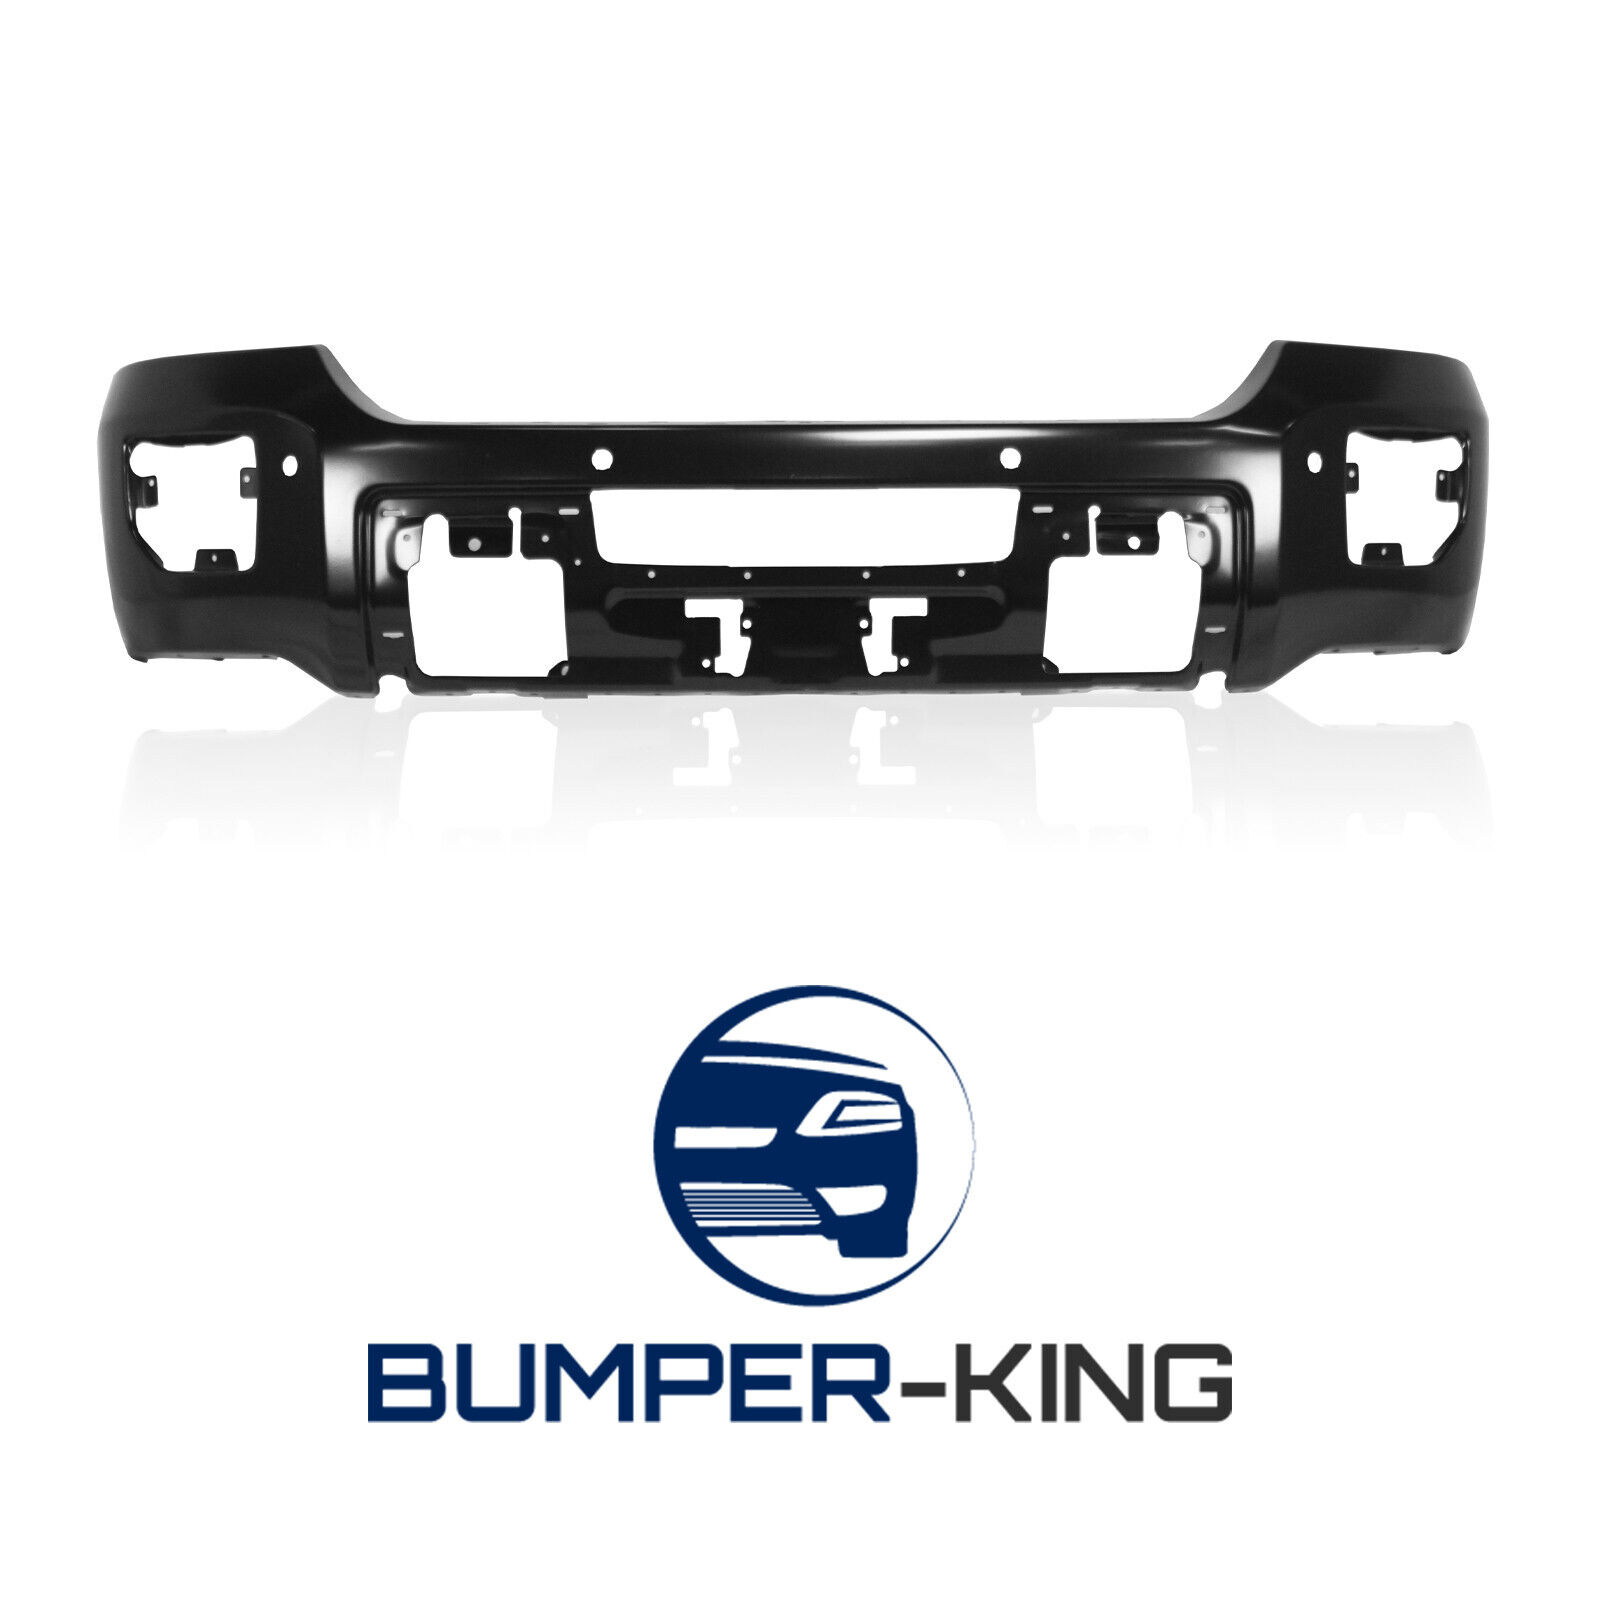 BUMPER-KING Primered Front Face Bar for 2015-2019 GMC Sierra 2500 3500 w/ Park